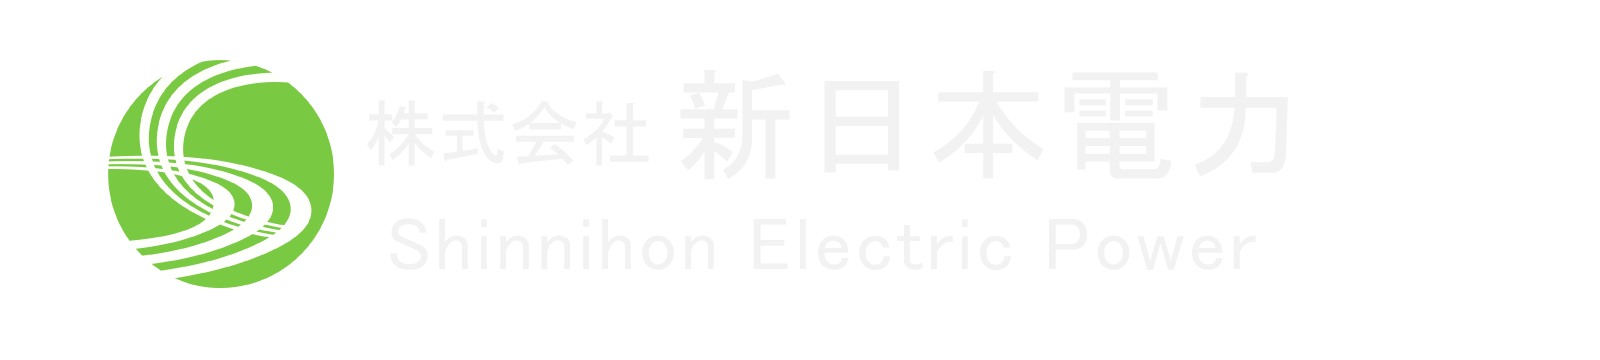 株式会社 新日本電力